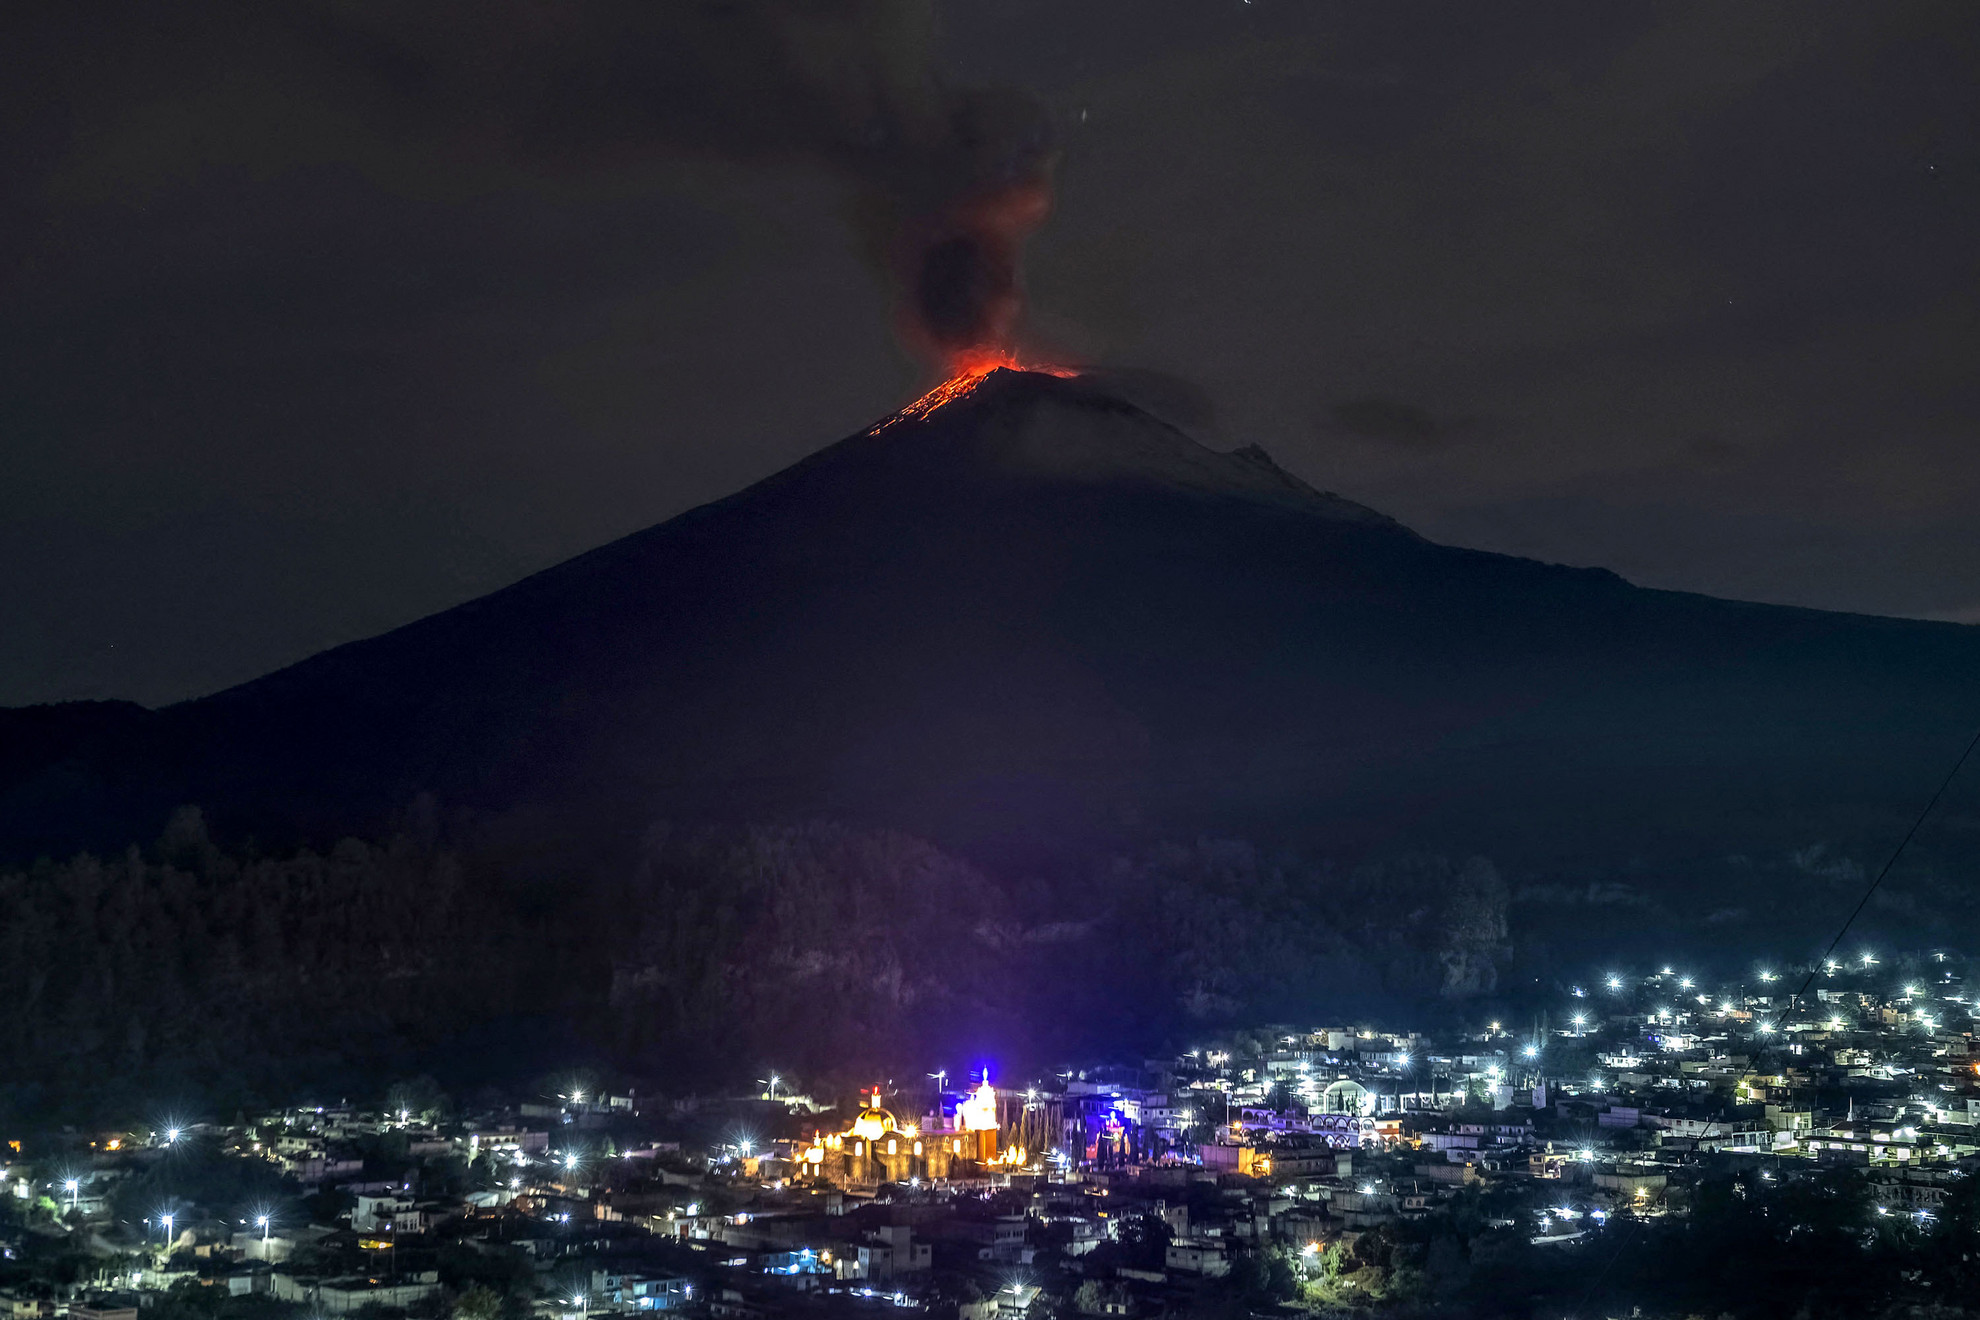 Május 22., hétfő: További fennakadásokat okoz a légi közlekedésben a Popocatépetl vulkán tevékenysége. Szakértők ugyanakkor úgy vélik, hogy a vulkanikus tevékenység korlátozott mértékű marad